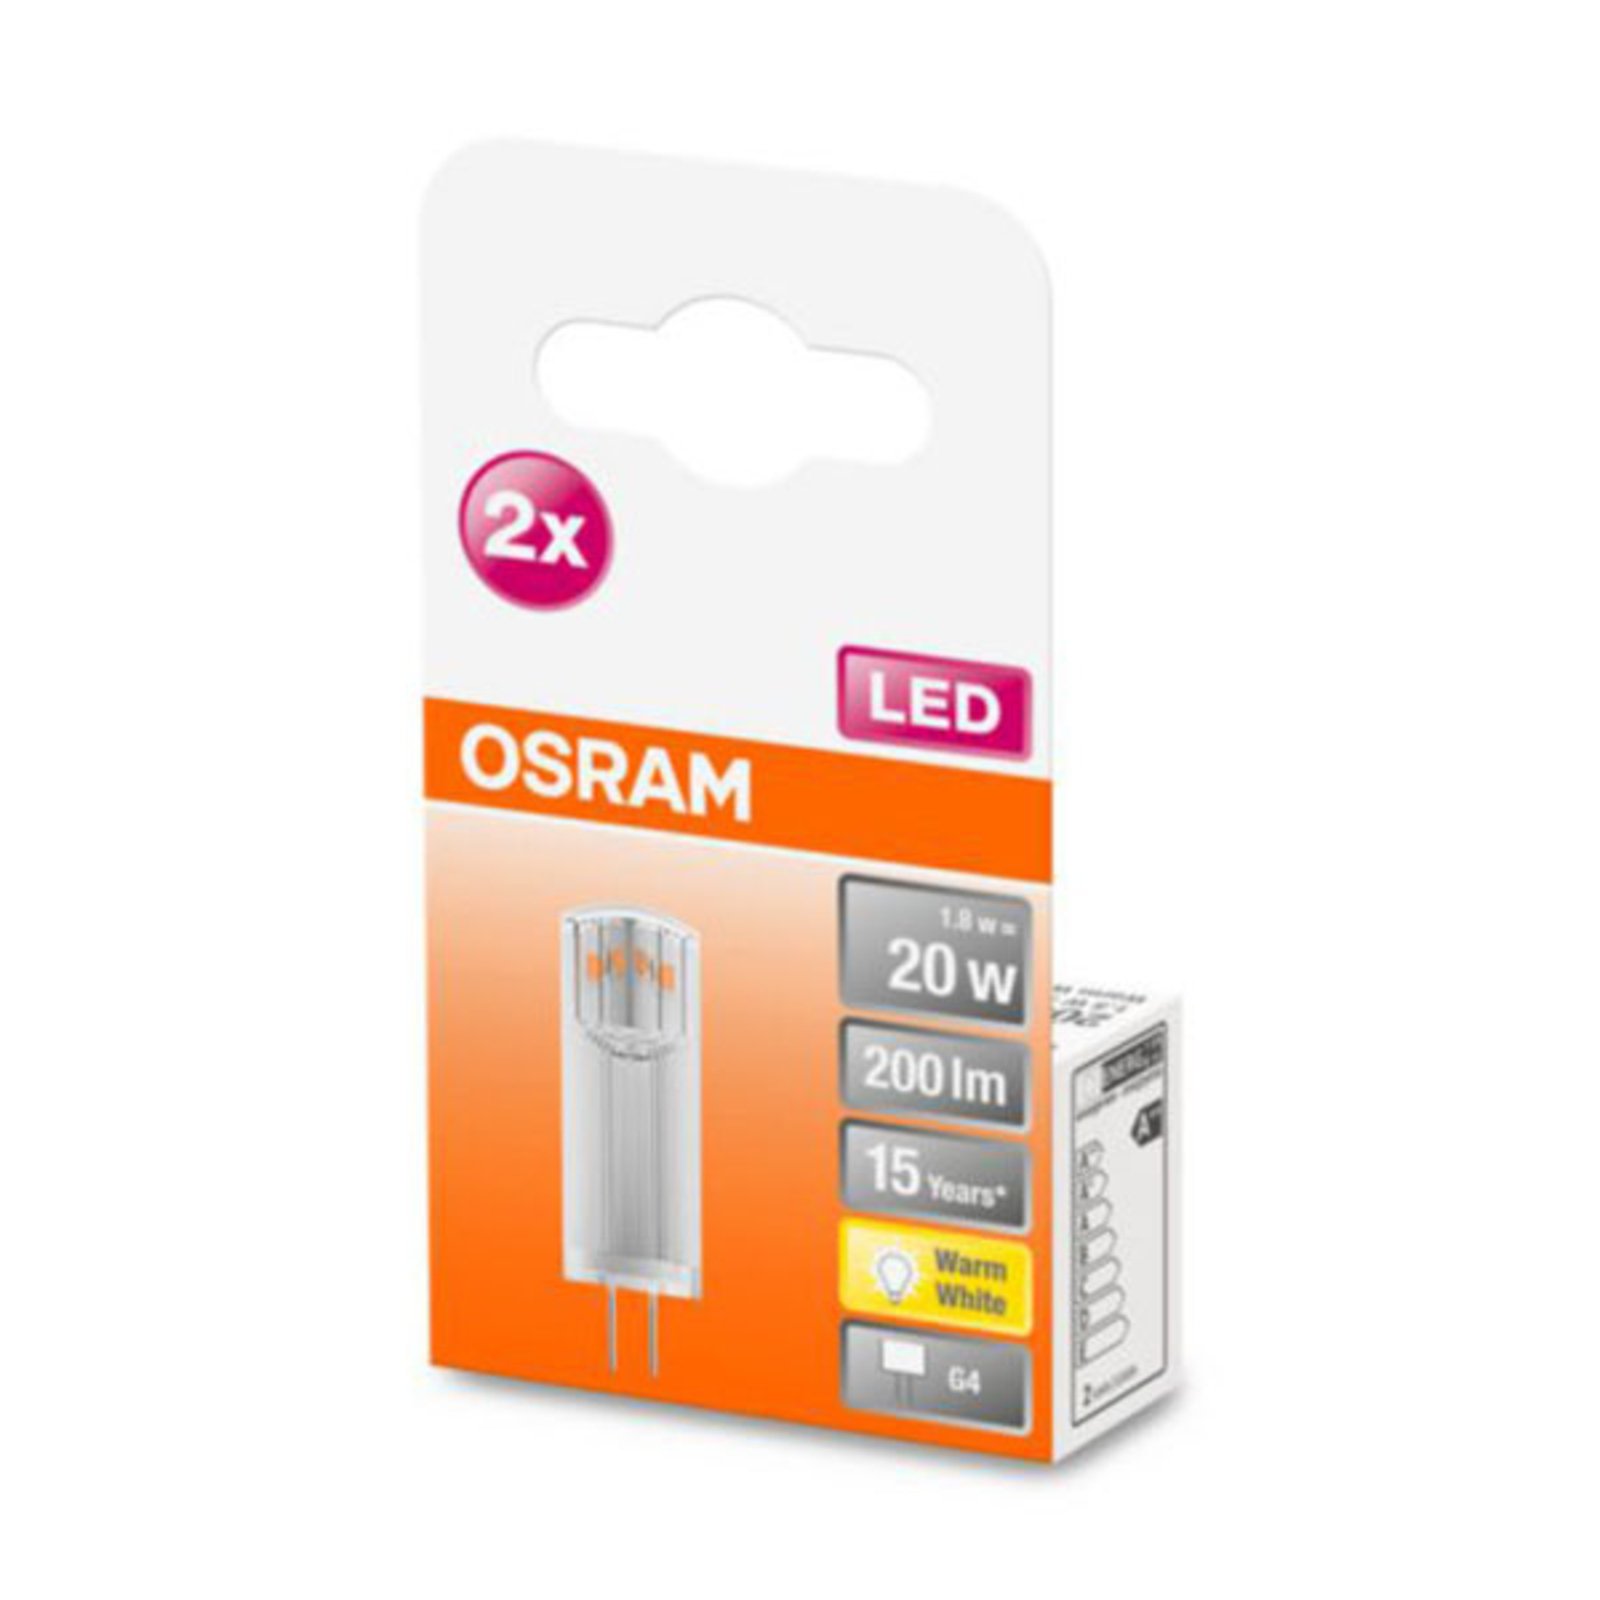 OSRAM LED stiftsokkel G4 1,8W 2 700K klar 2-pk